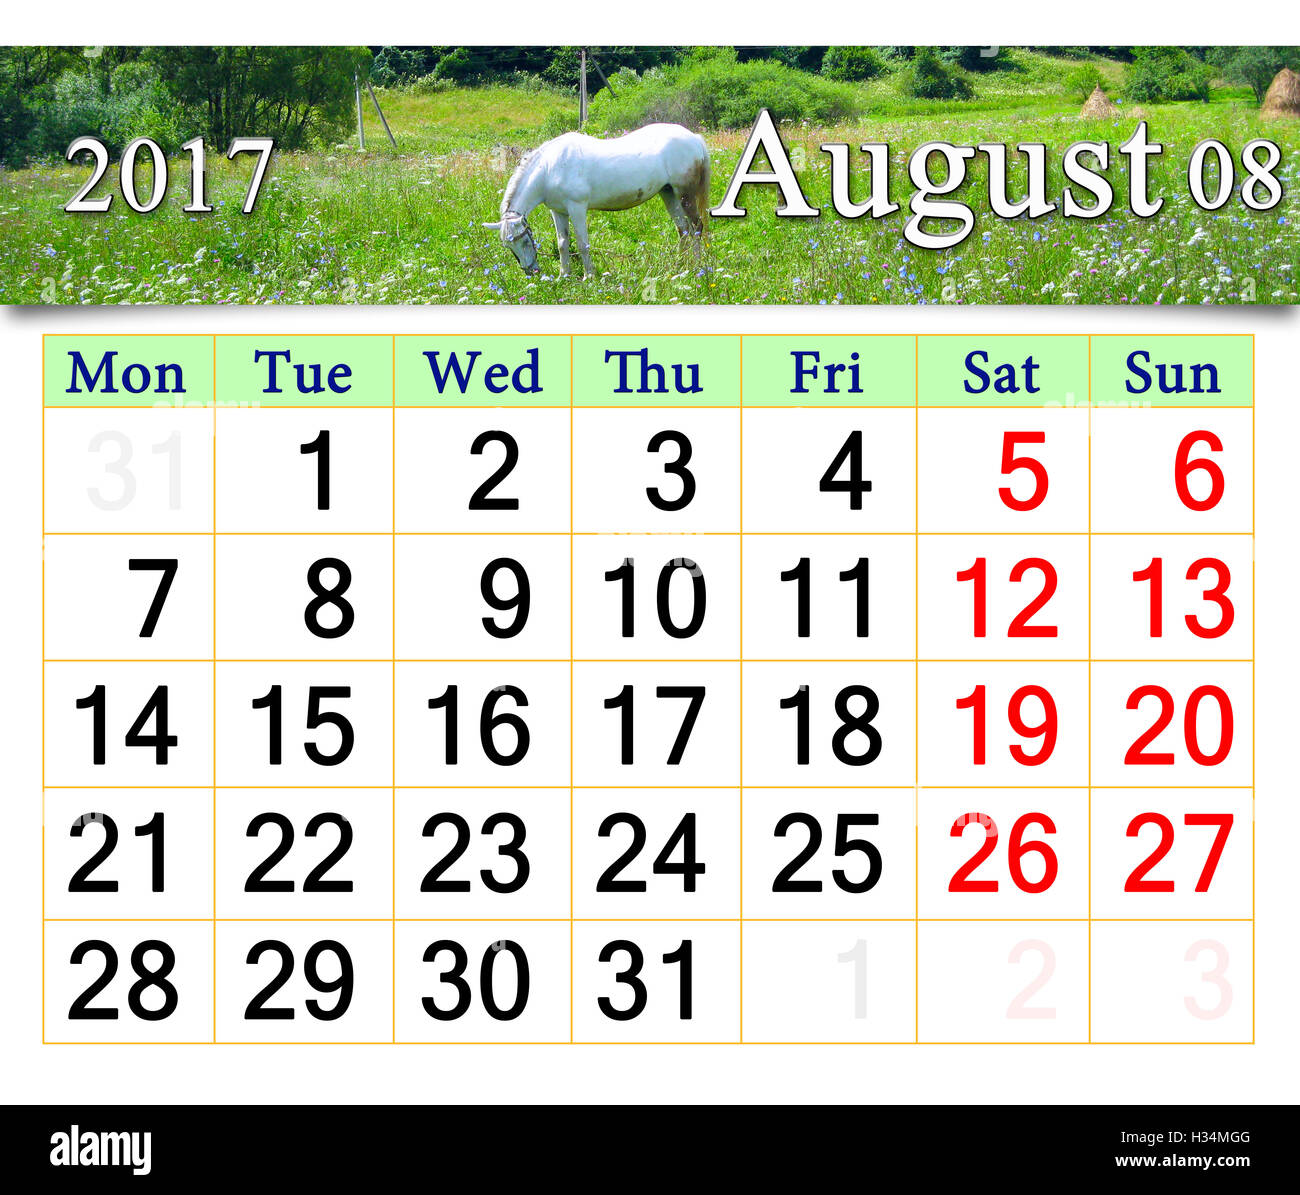 Calendrier pour août 2017 avec blanc cheval brouter dans le pré Banque D'Images